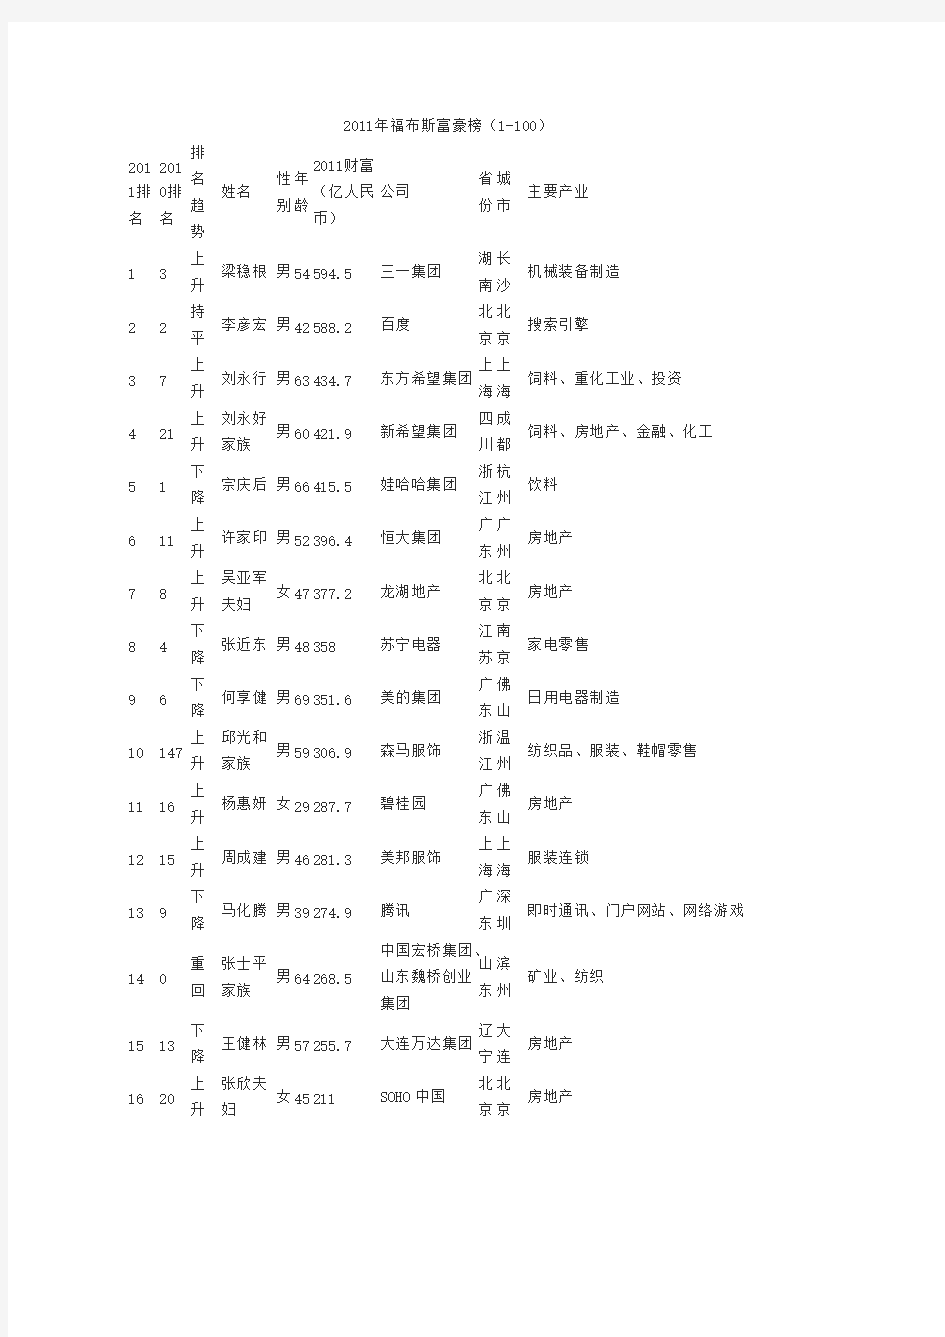 [vip专享]2011年福布斯中国富豪榜榜单(1-100